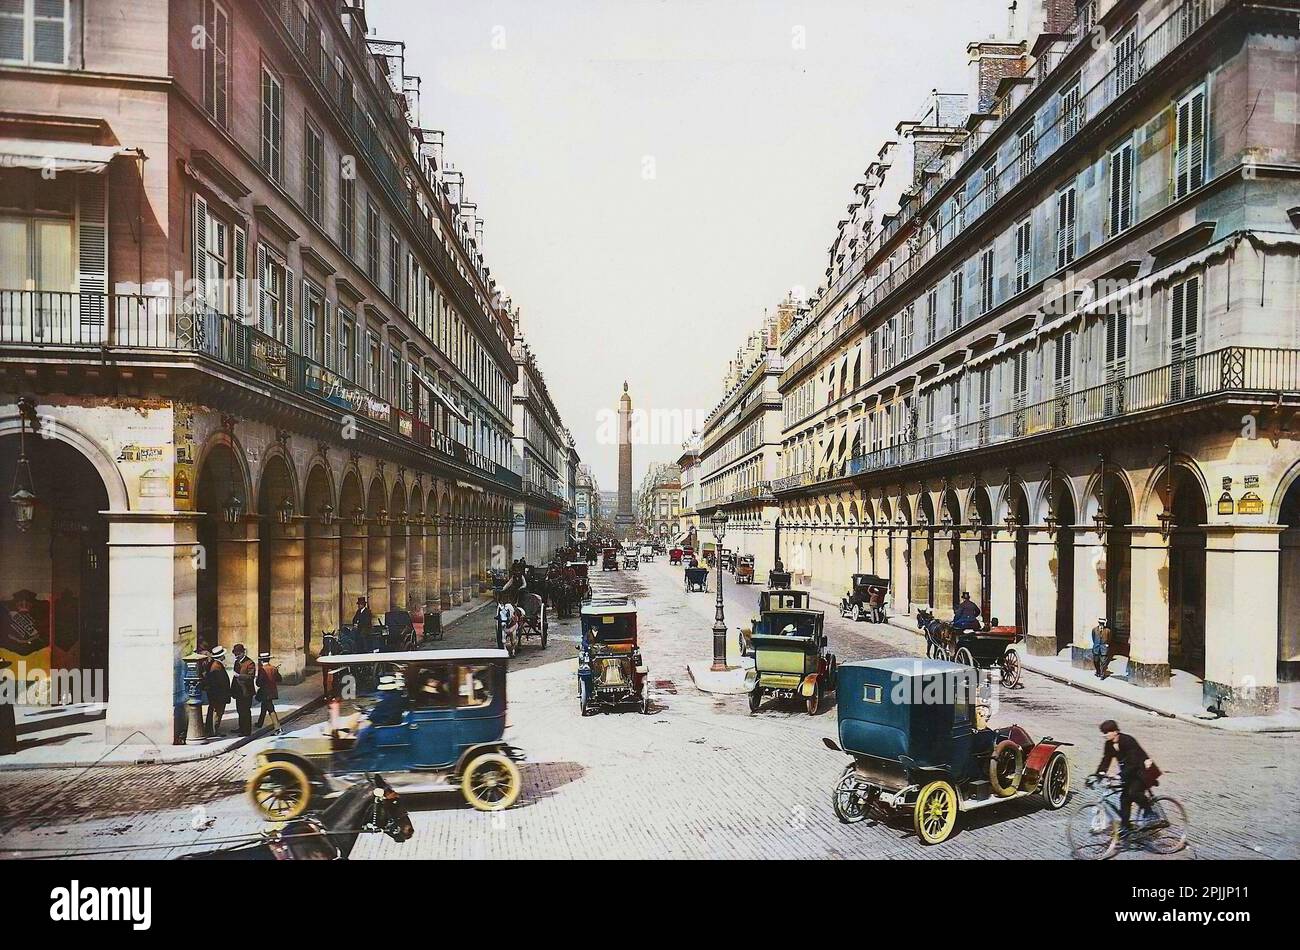 Paris. Vue de la rue de Castiglione au début du 20e siècle. Avec l'obélisque de la place Vendôme en arrière-plan. Stock Photo